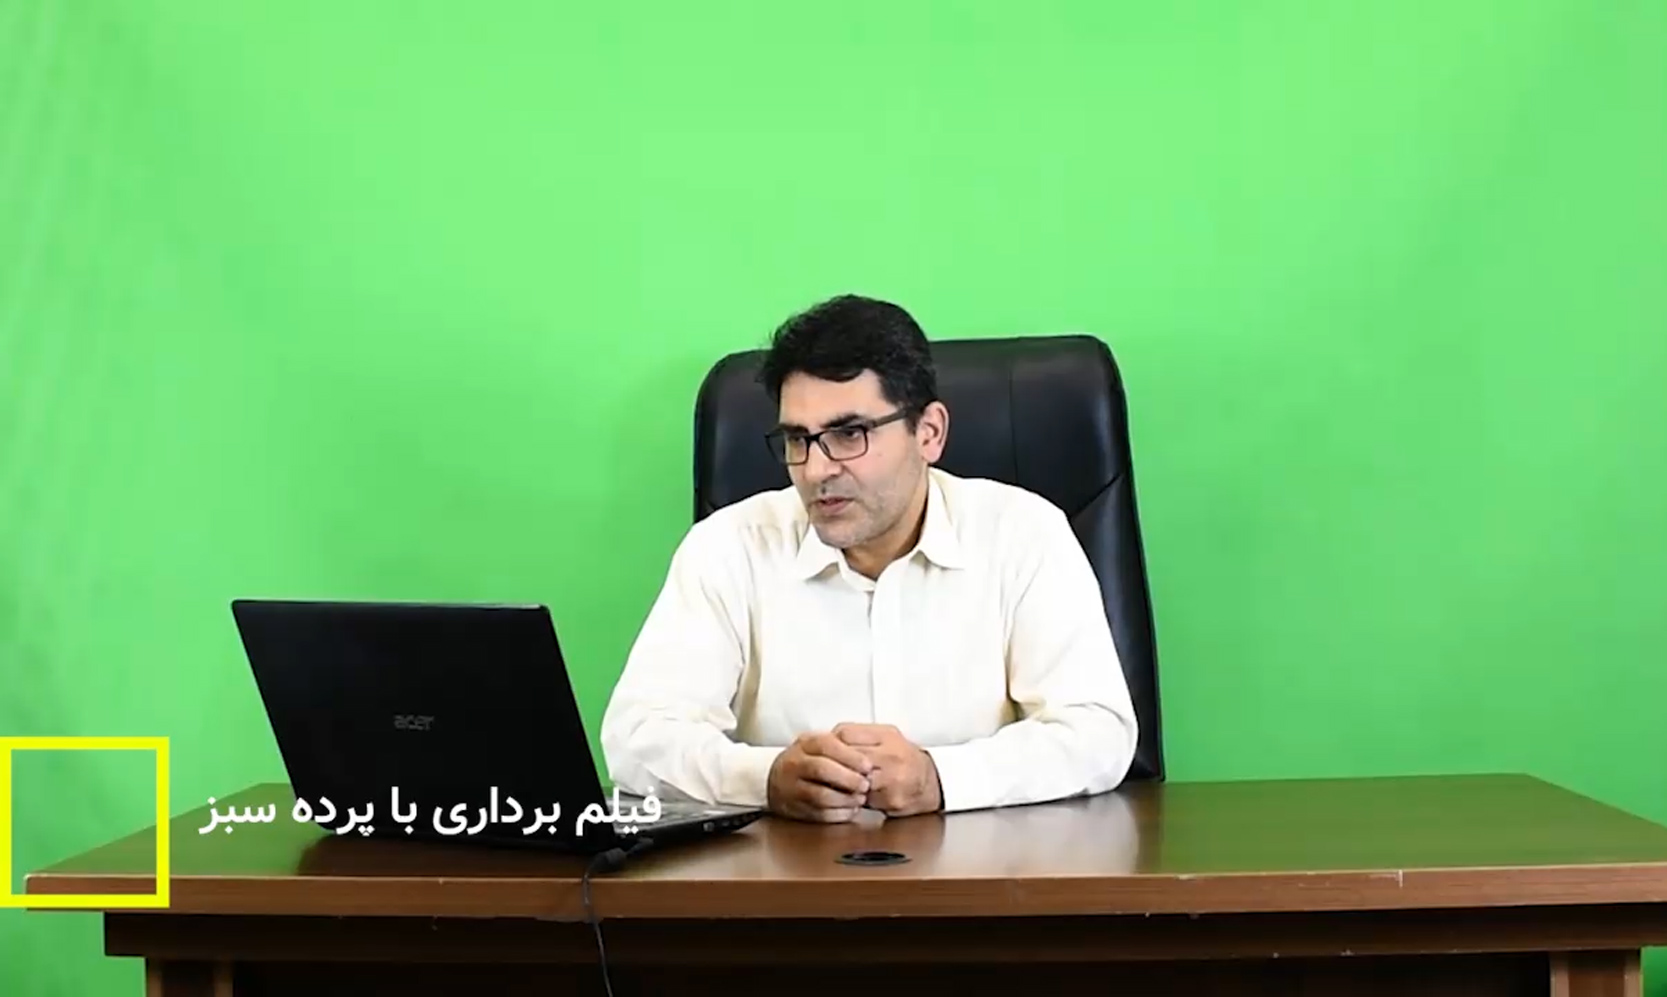 فیلمبرداری از دکتر سعادت نیا با تکنیک کروماکی و پرده سبز